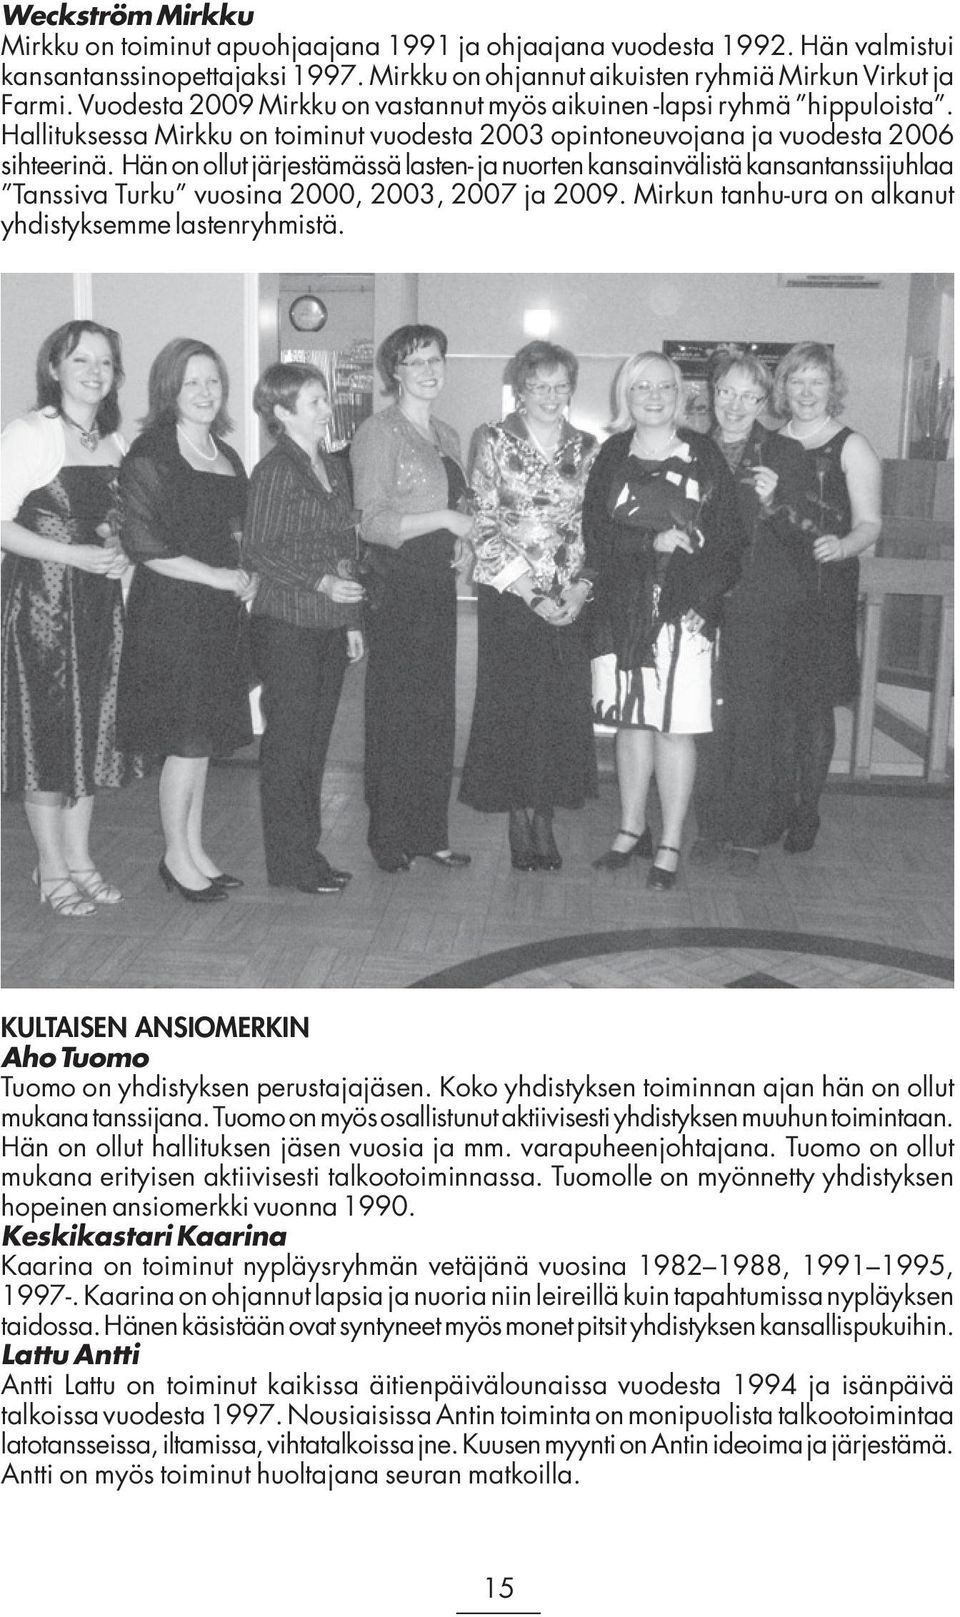 Hän on ollut järjestämässä lasten- ja nuorten kansainvälistä kansantanssijuhlaa Tanssiva Turku vuosina 2000, 2003, 2007 ja 2009. Mirkun tanhu-ura on alkanut yhdistyksemme lastenryhmistä.